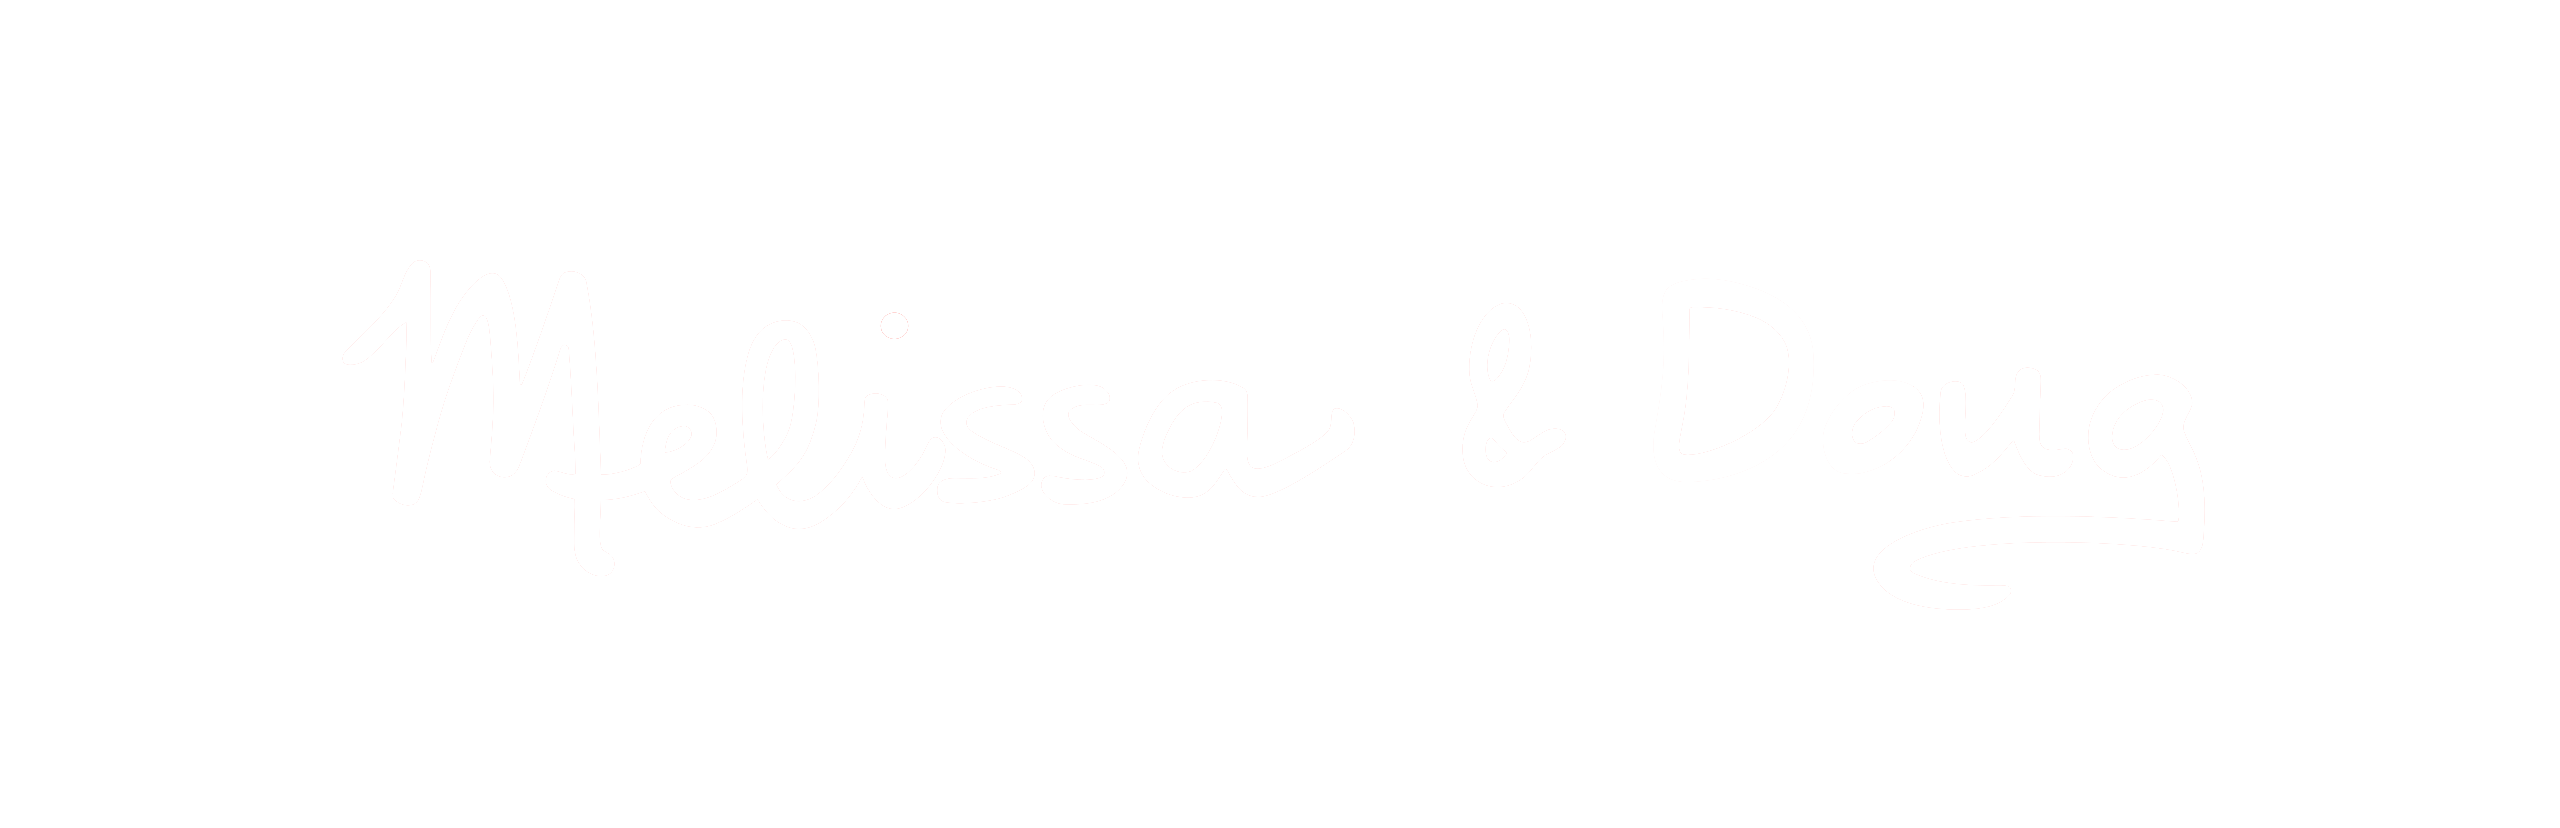 Melissa and Doug Logo